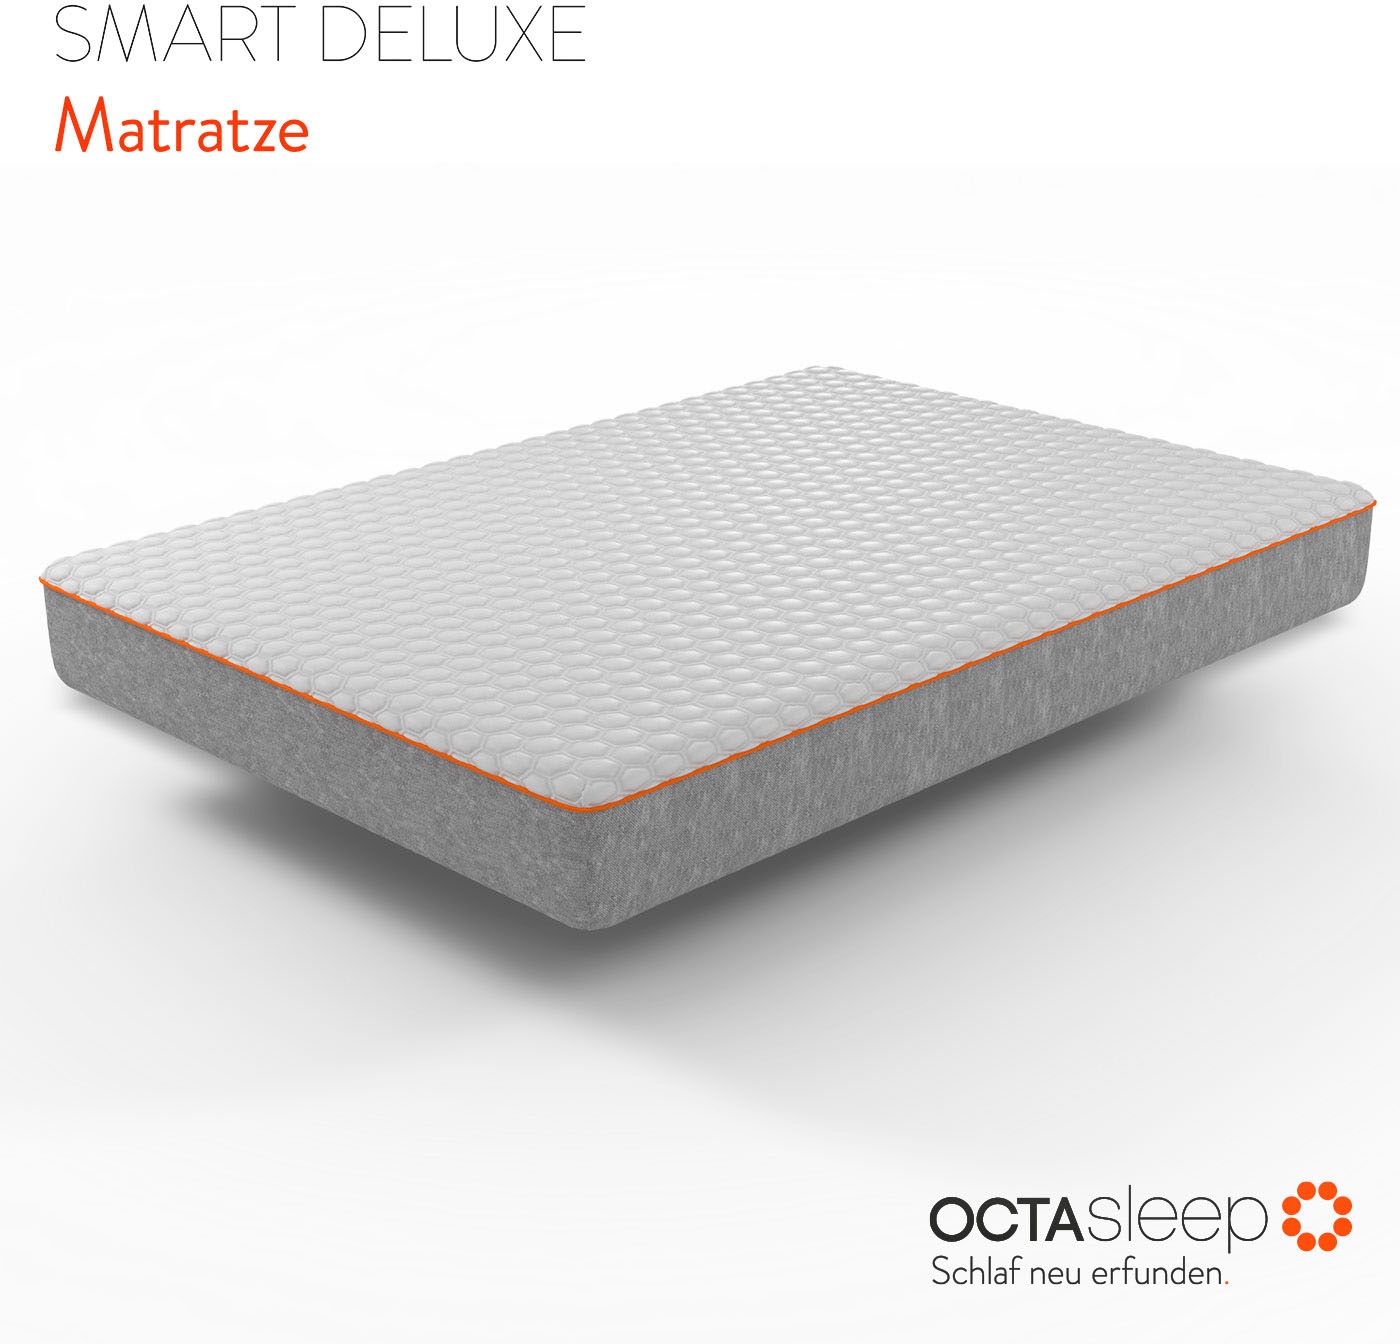 Komfortschaummatratze »Octasleep Smart Deluxe Mattress«, 20 cm hoch, Raumgewicht: 38...